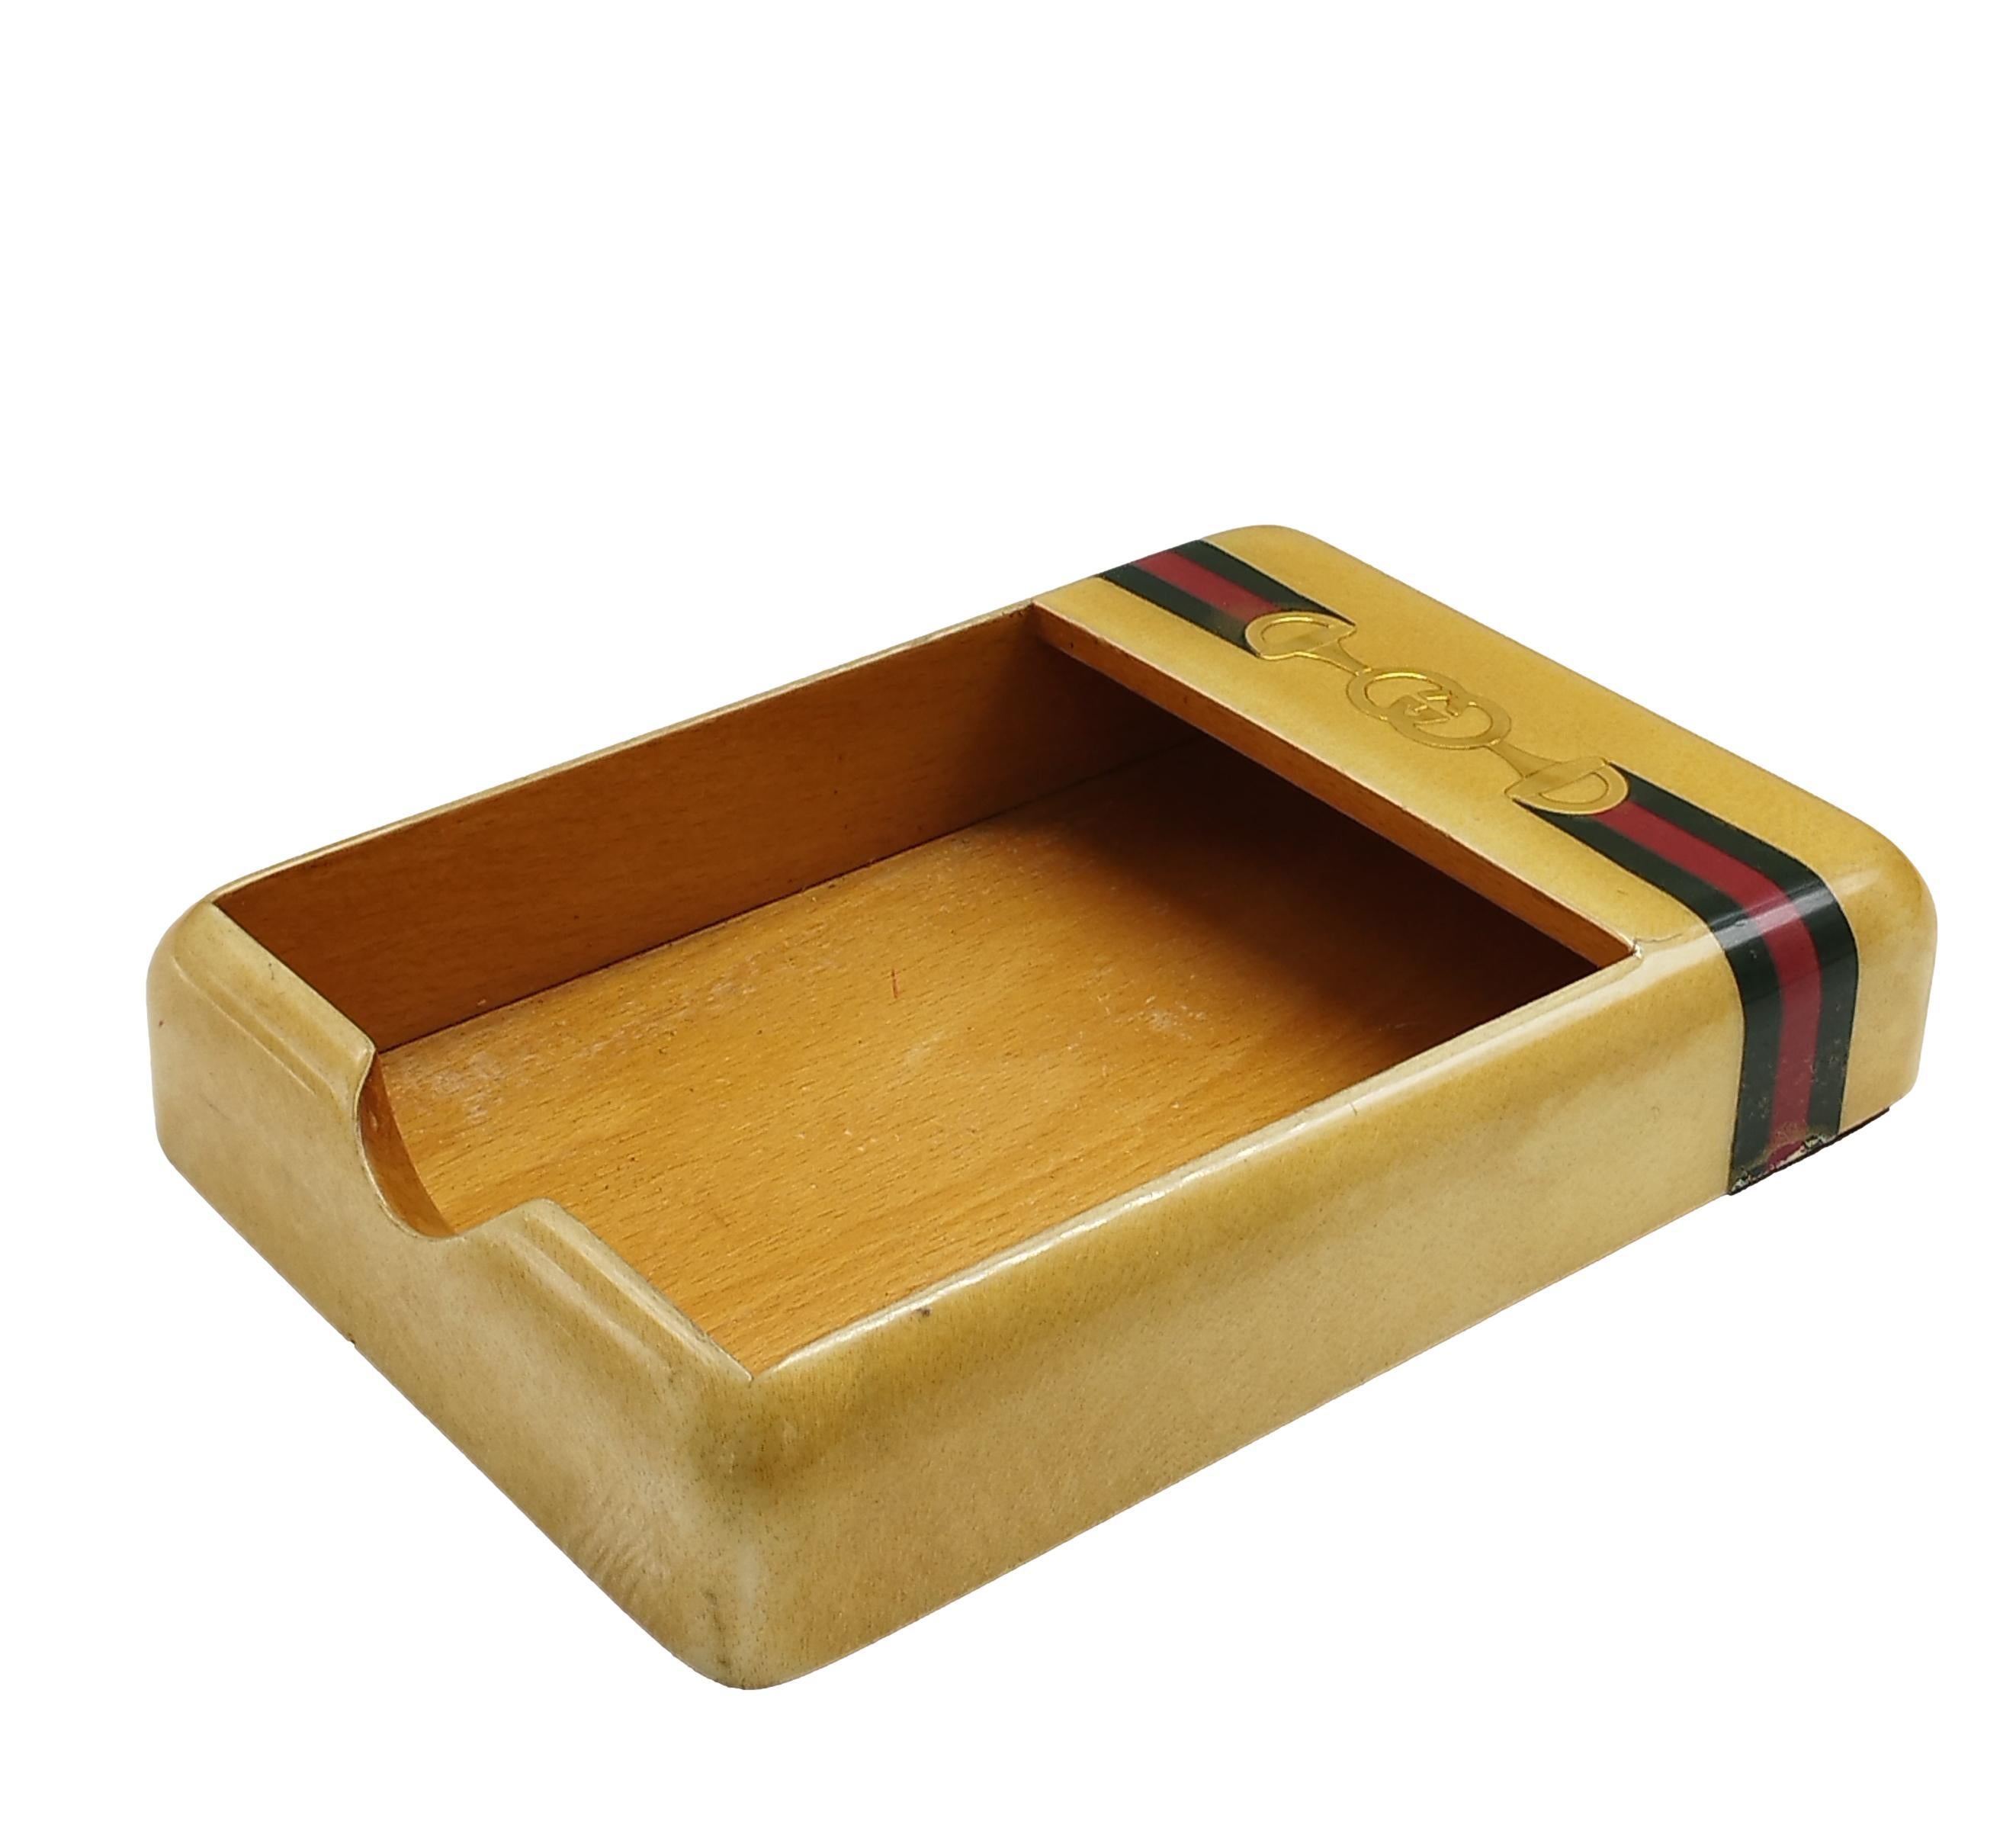 Gucci maple wood desk accessory or tidy tray, original, 1970s.